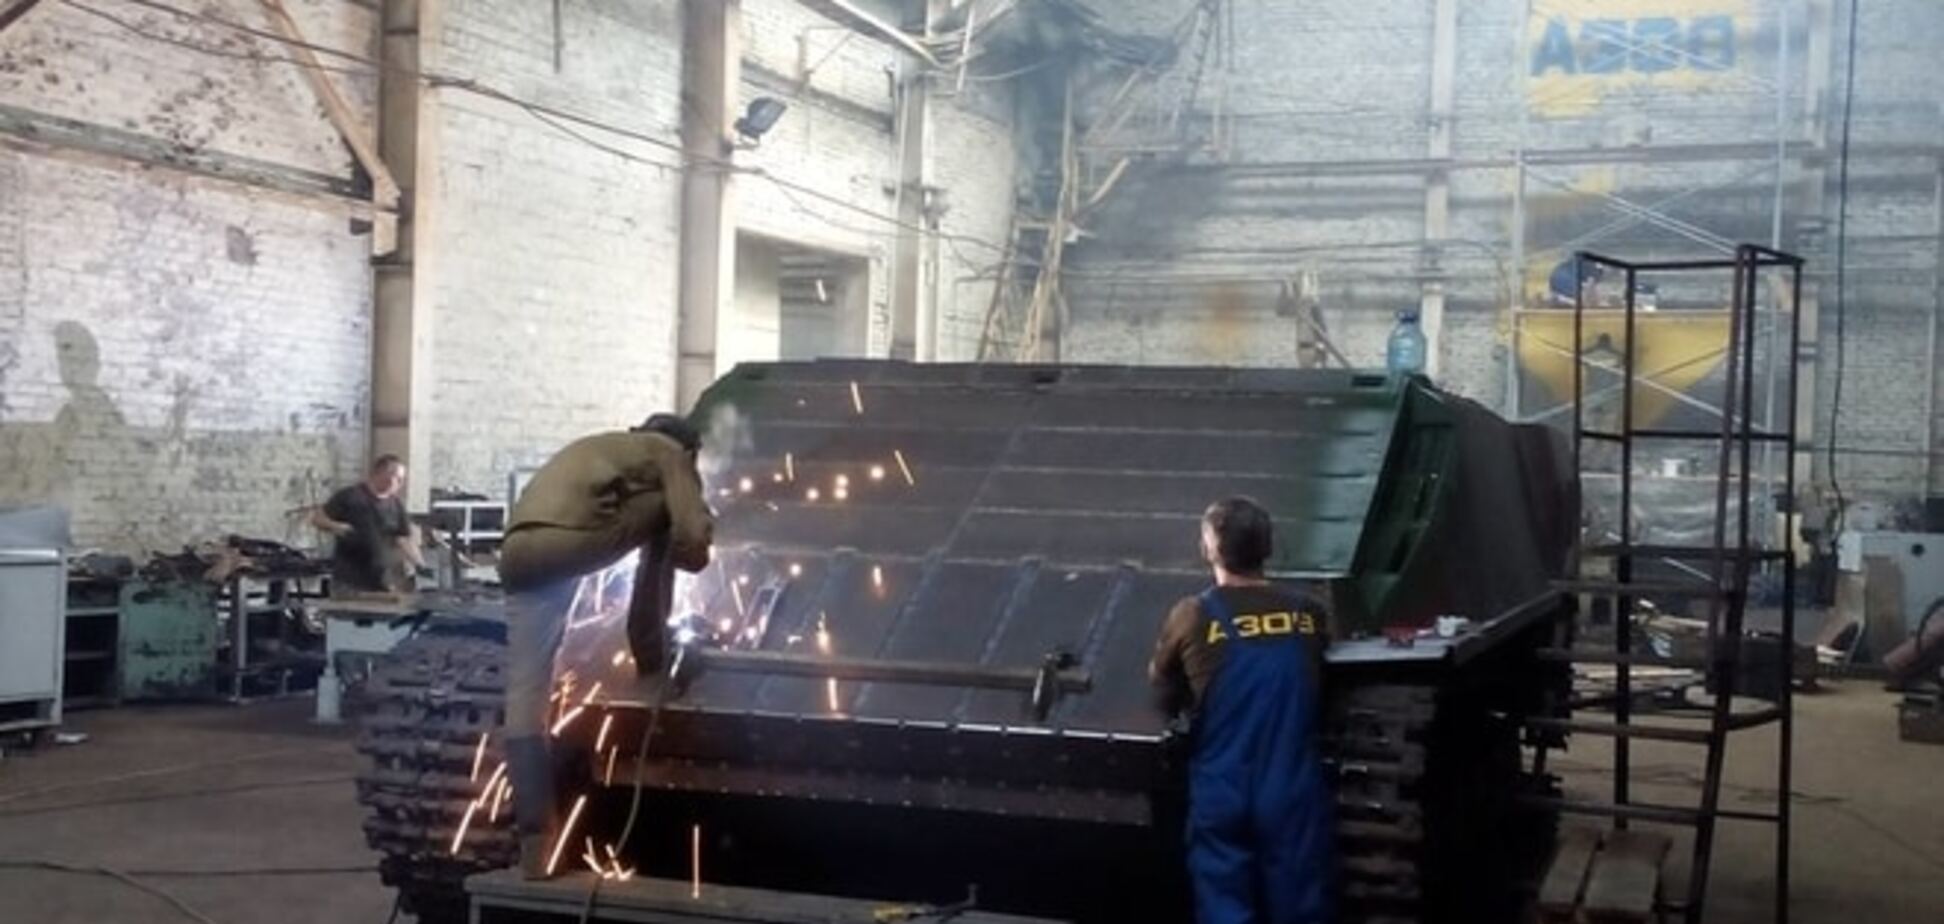 'Укроборонпром' обзавидуется. Волонтер показал, какую 'суперброню' делают 'Азовцы' на заводе: фотофакт